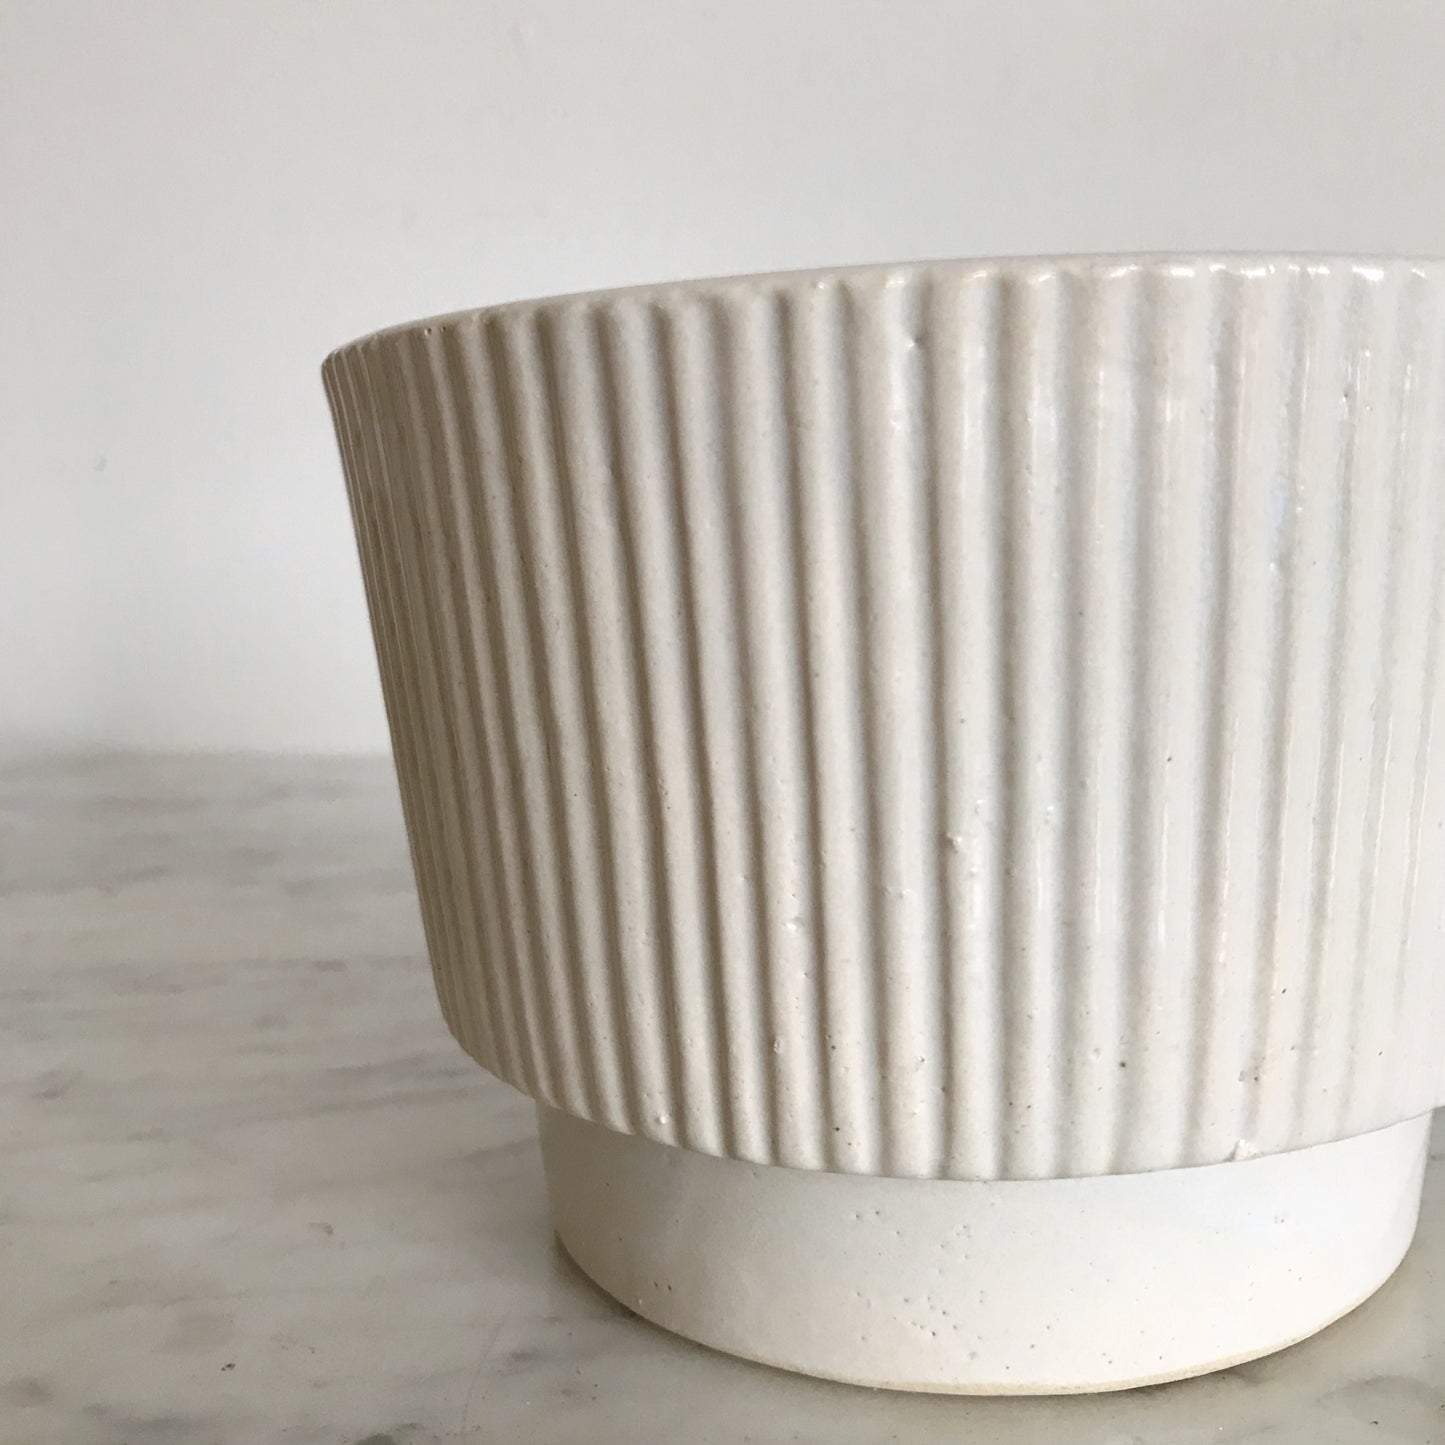 Vintage Reeded Ceramic Planter, 4"